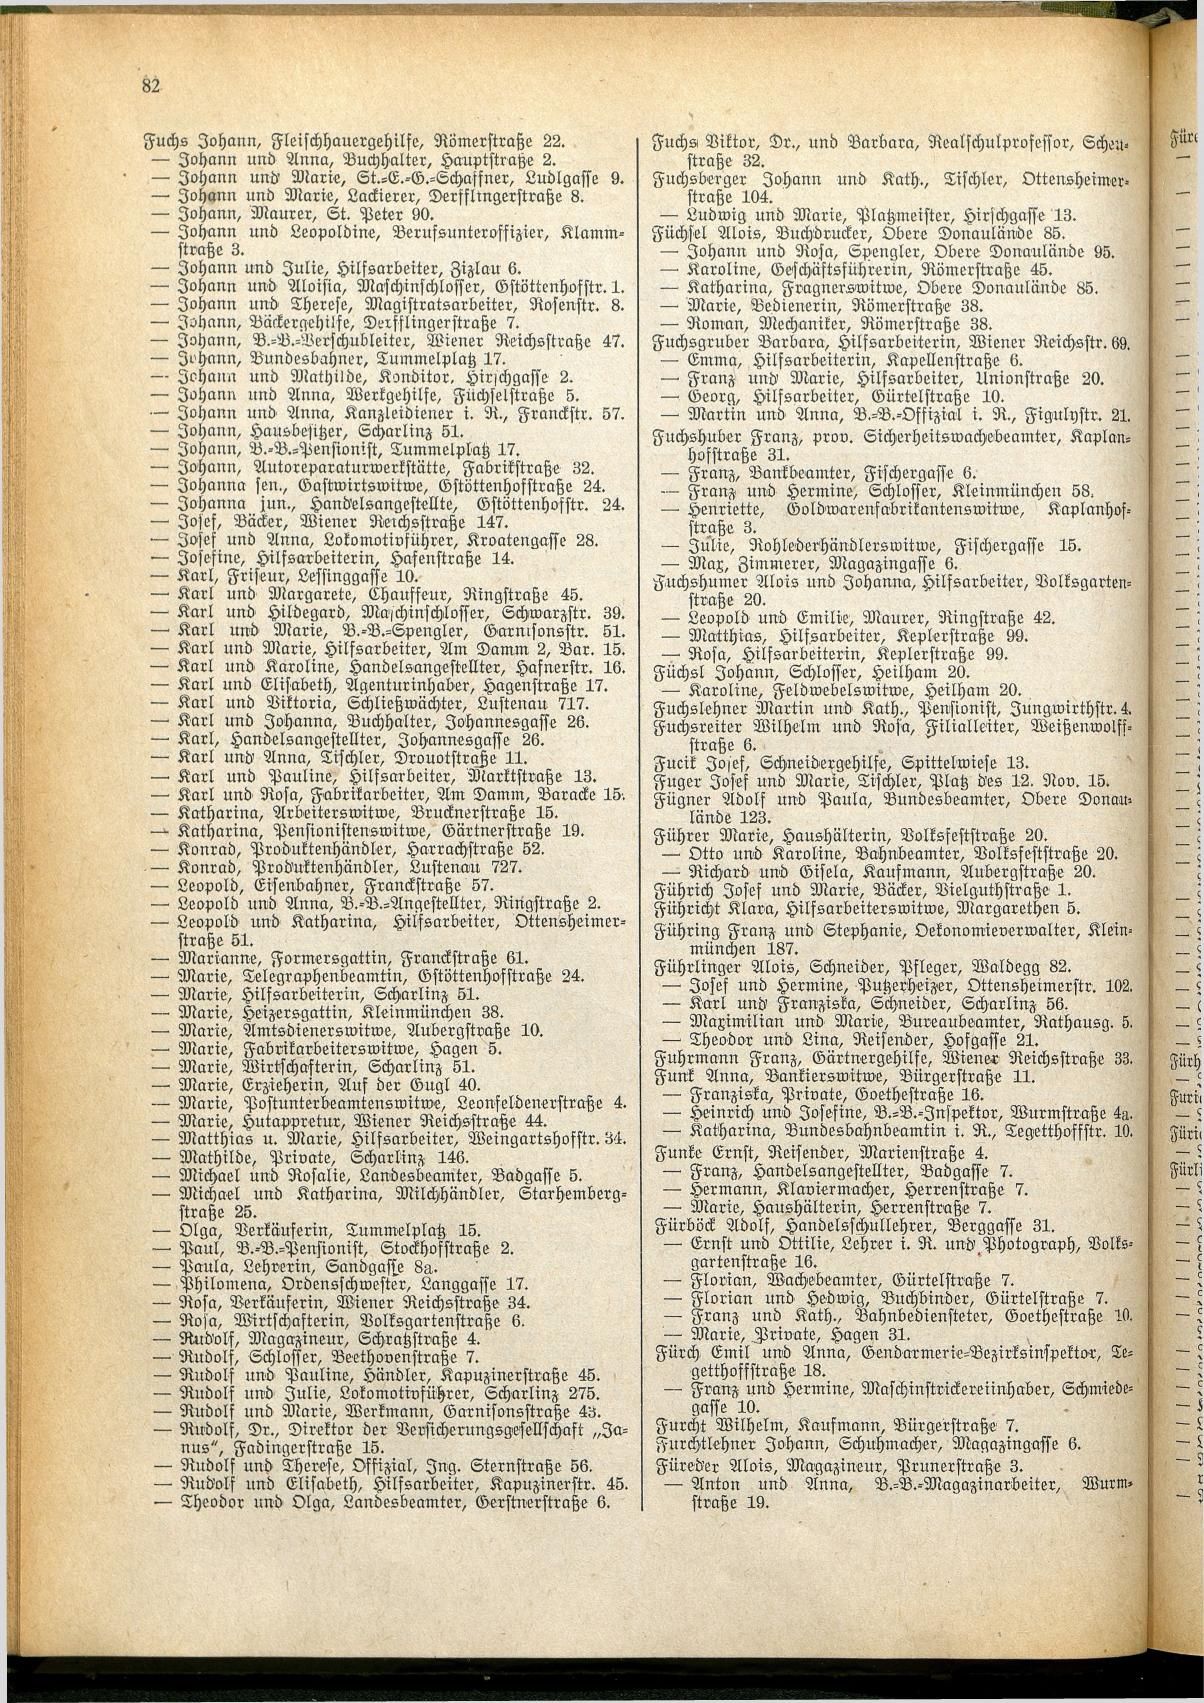 Amtliches Linzer Adreßbuch 1928 - Seite 84